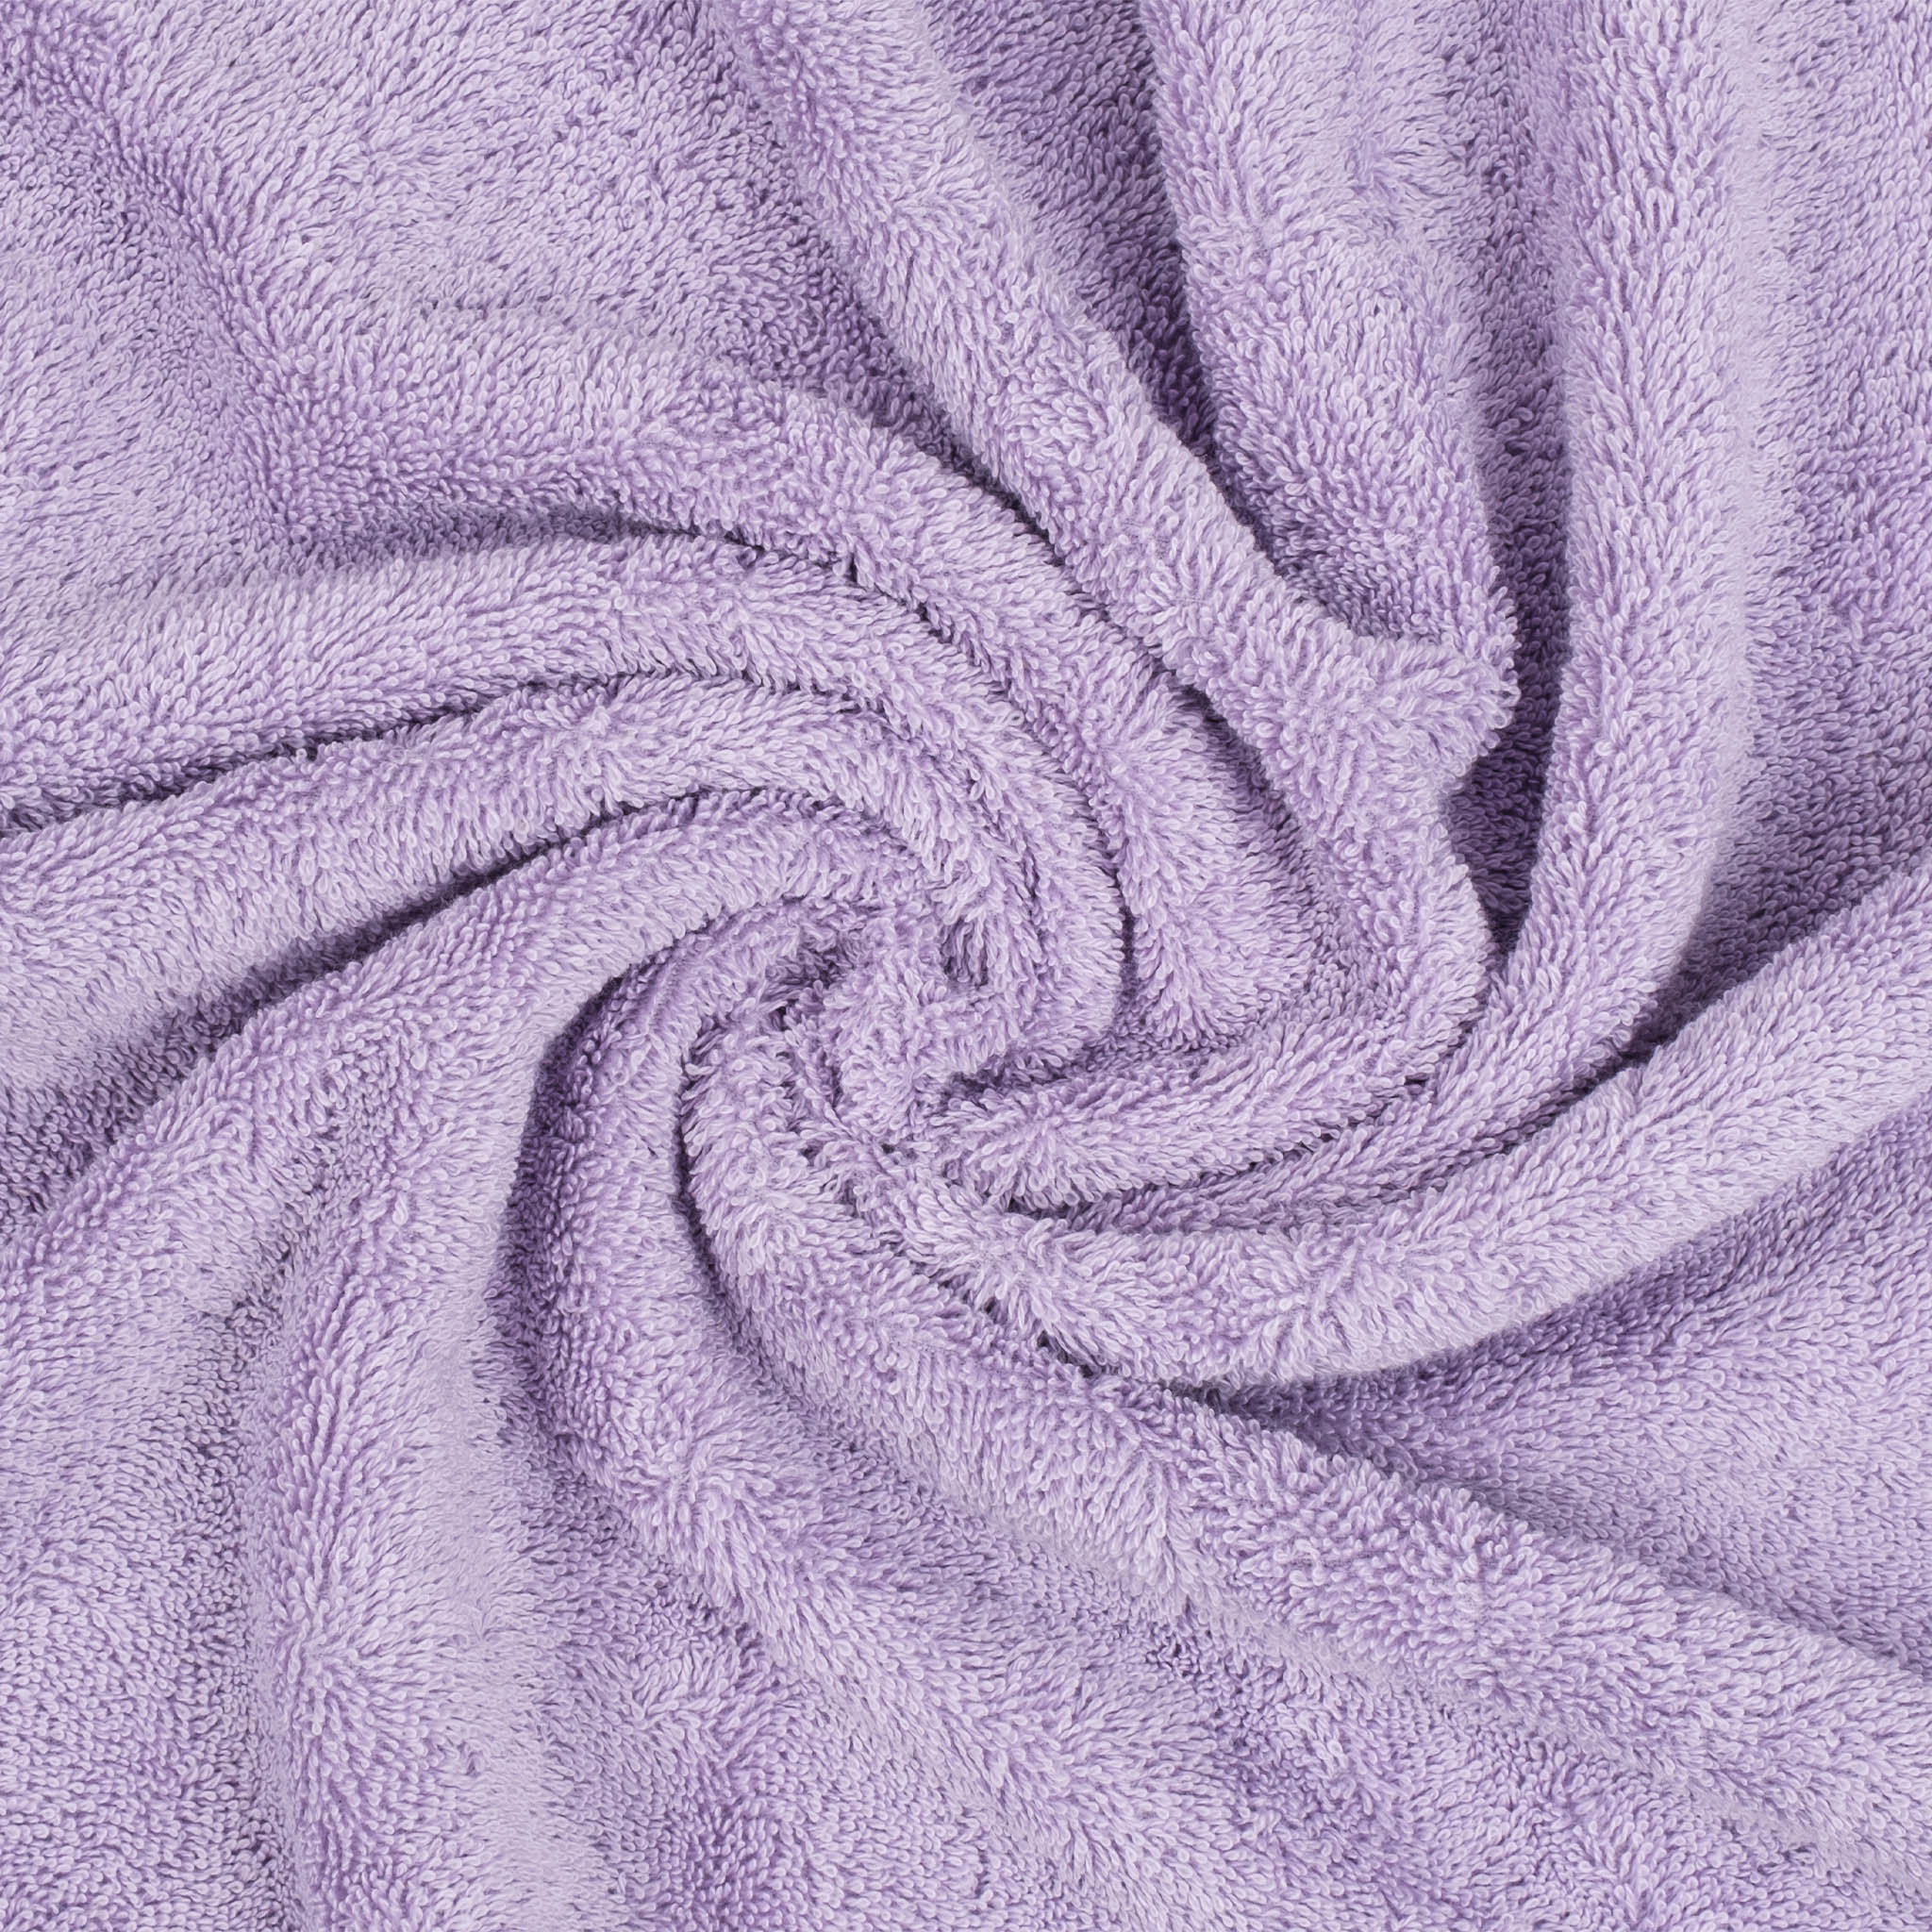 American Soft Linen 100% Turkish Cotton 6 Piece Towel Set Wholesale lilac-7